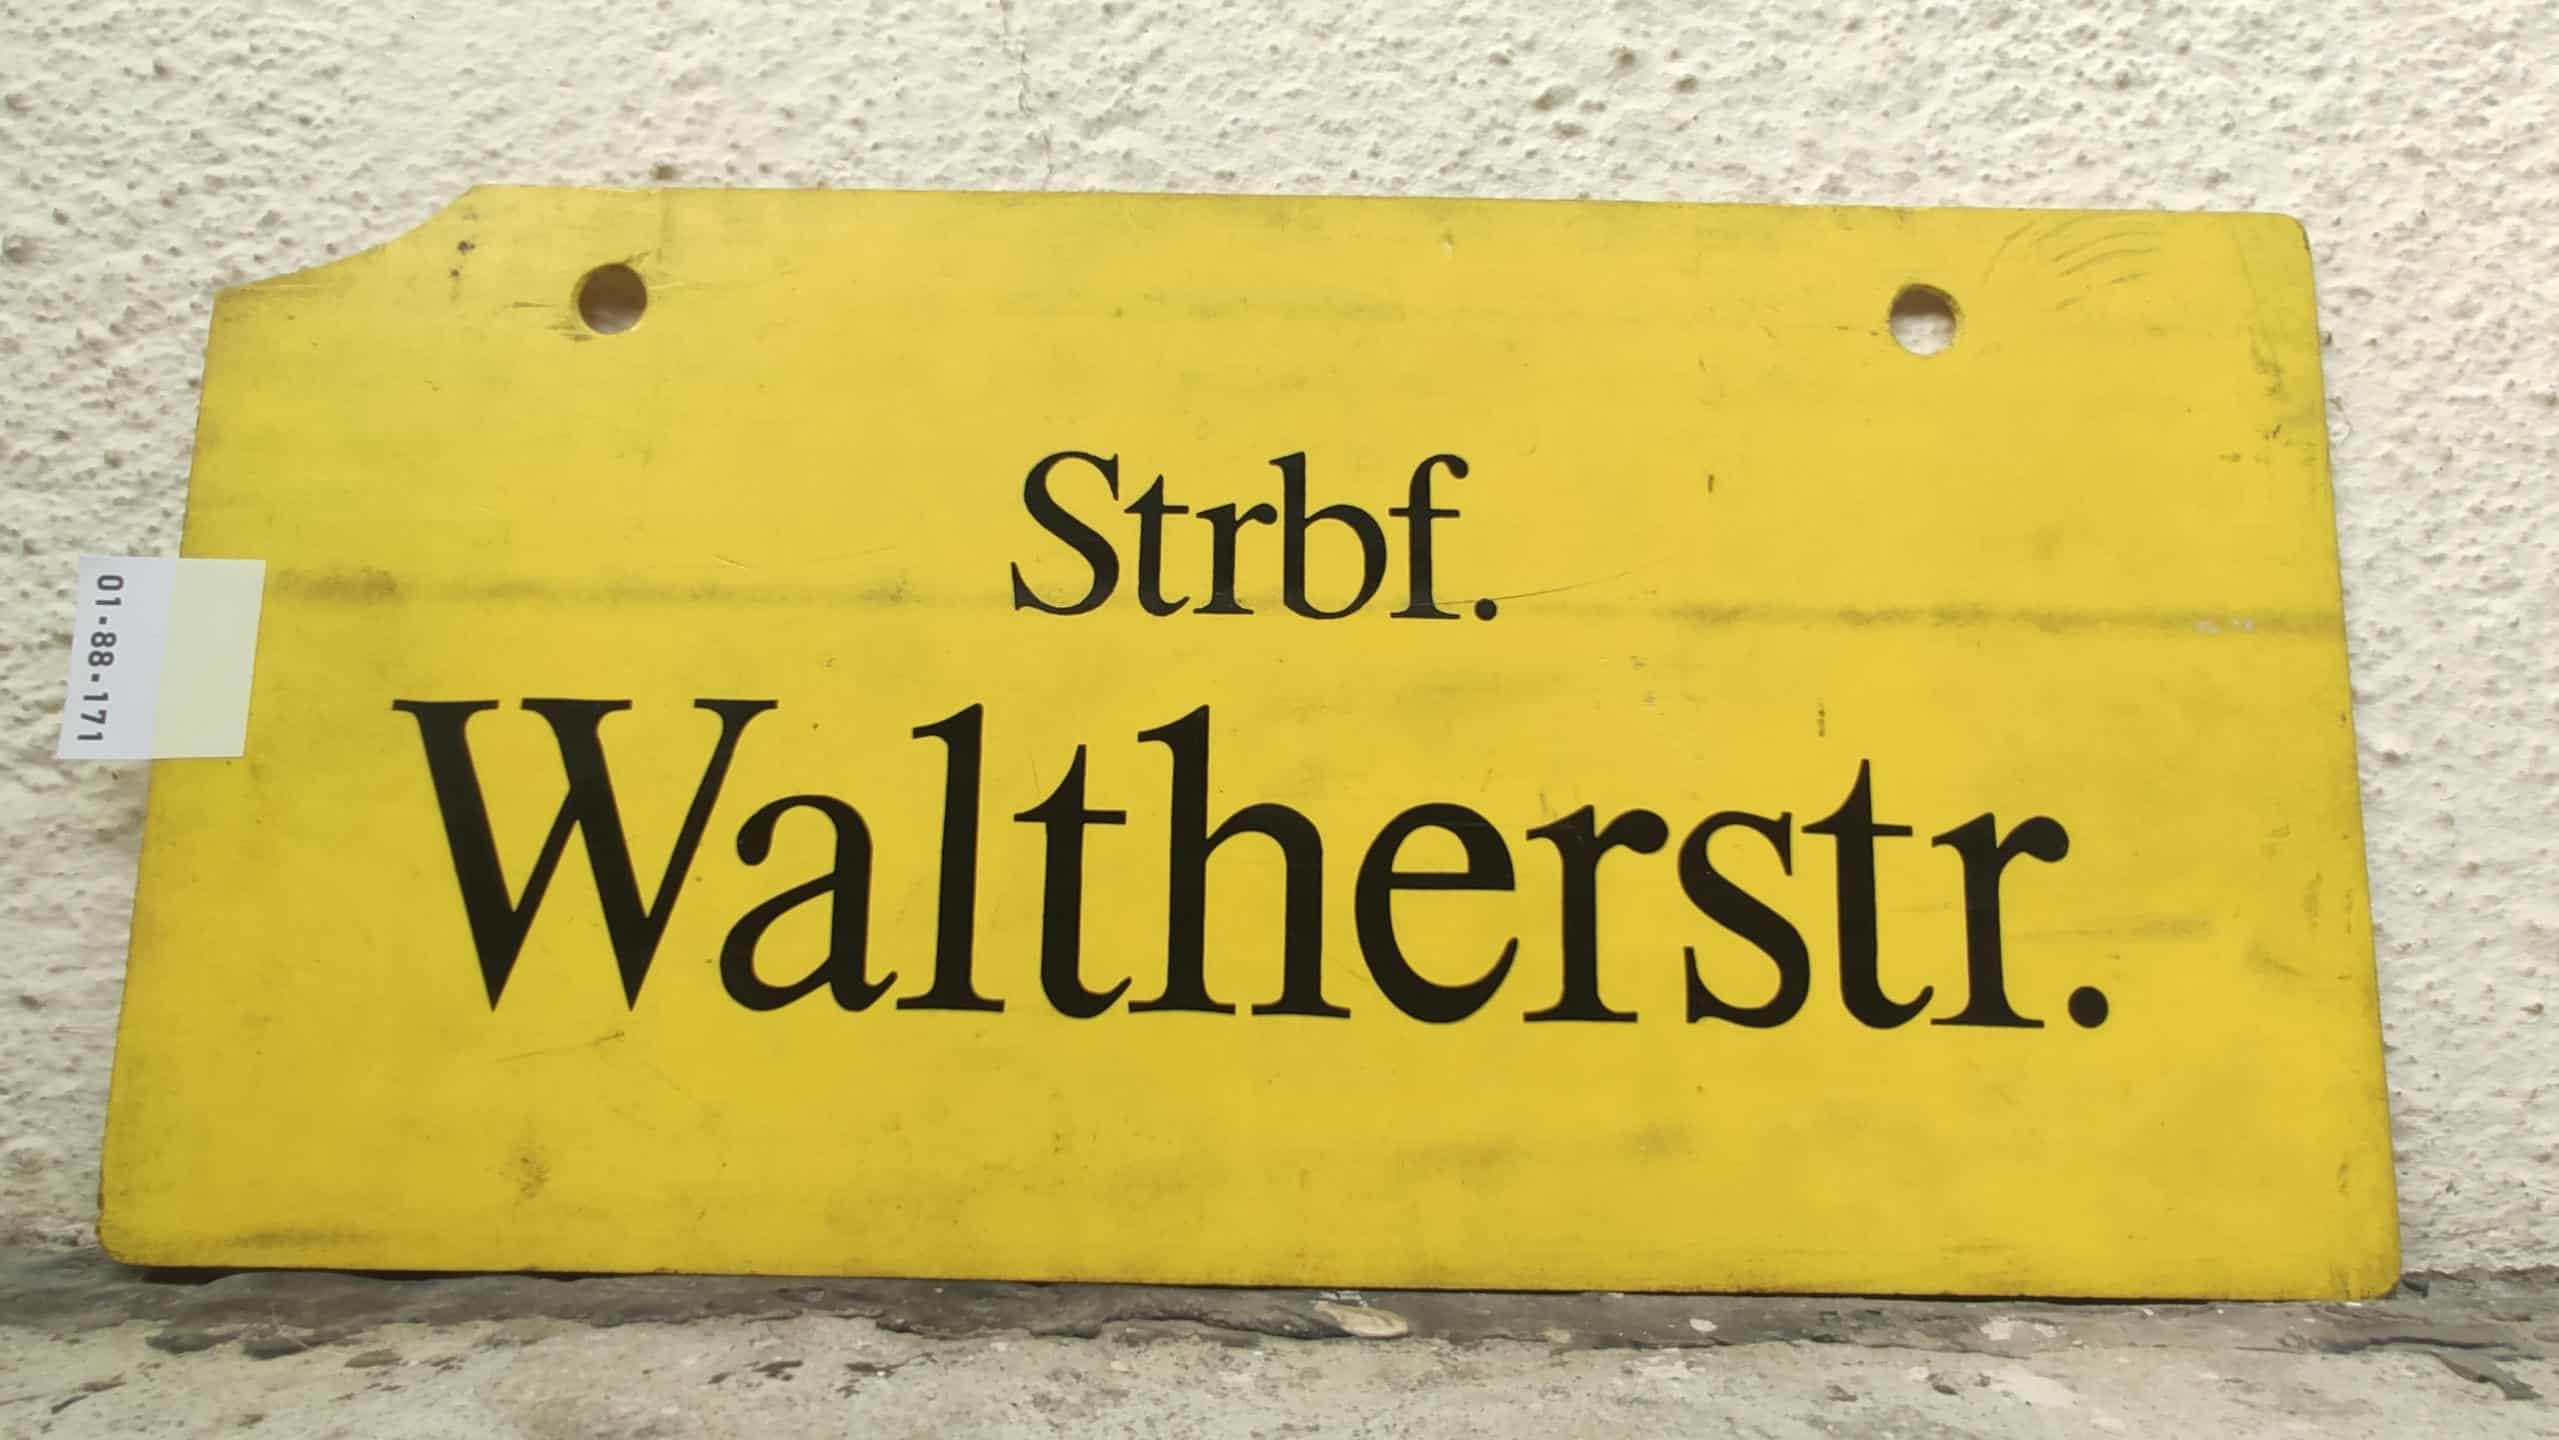 Strbf. Waltherstr.